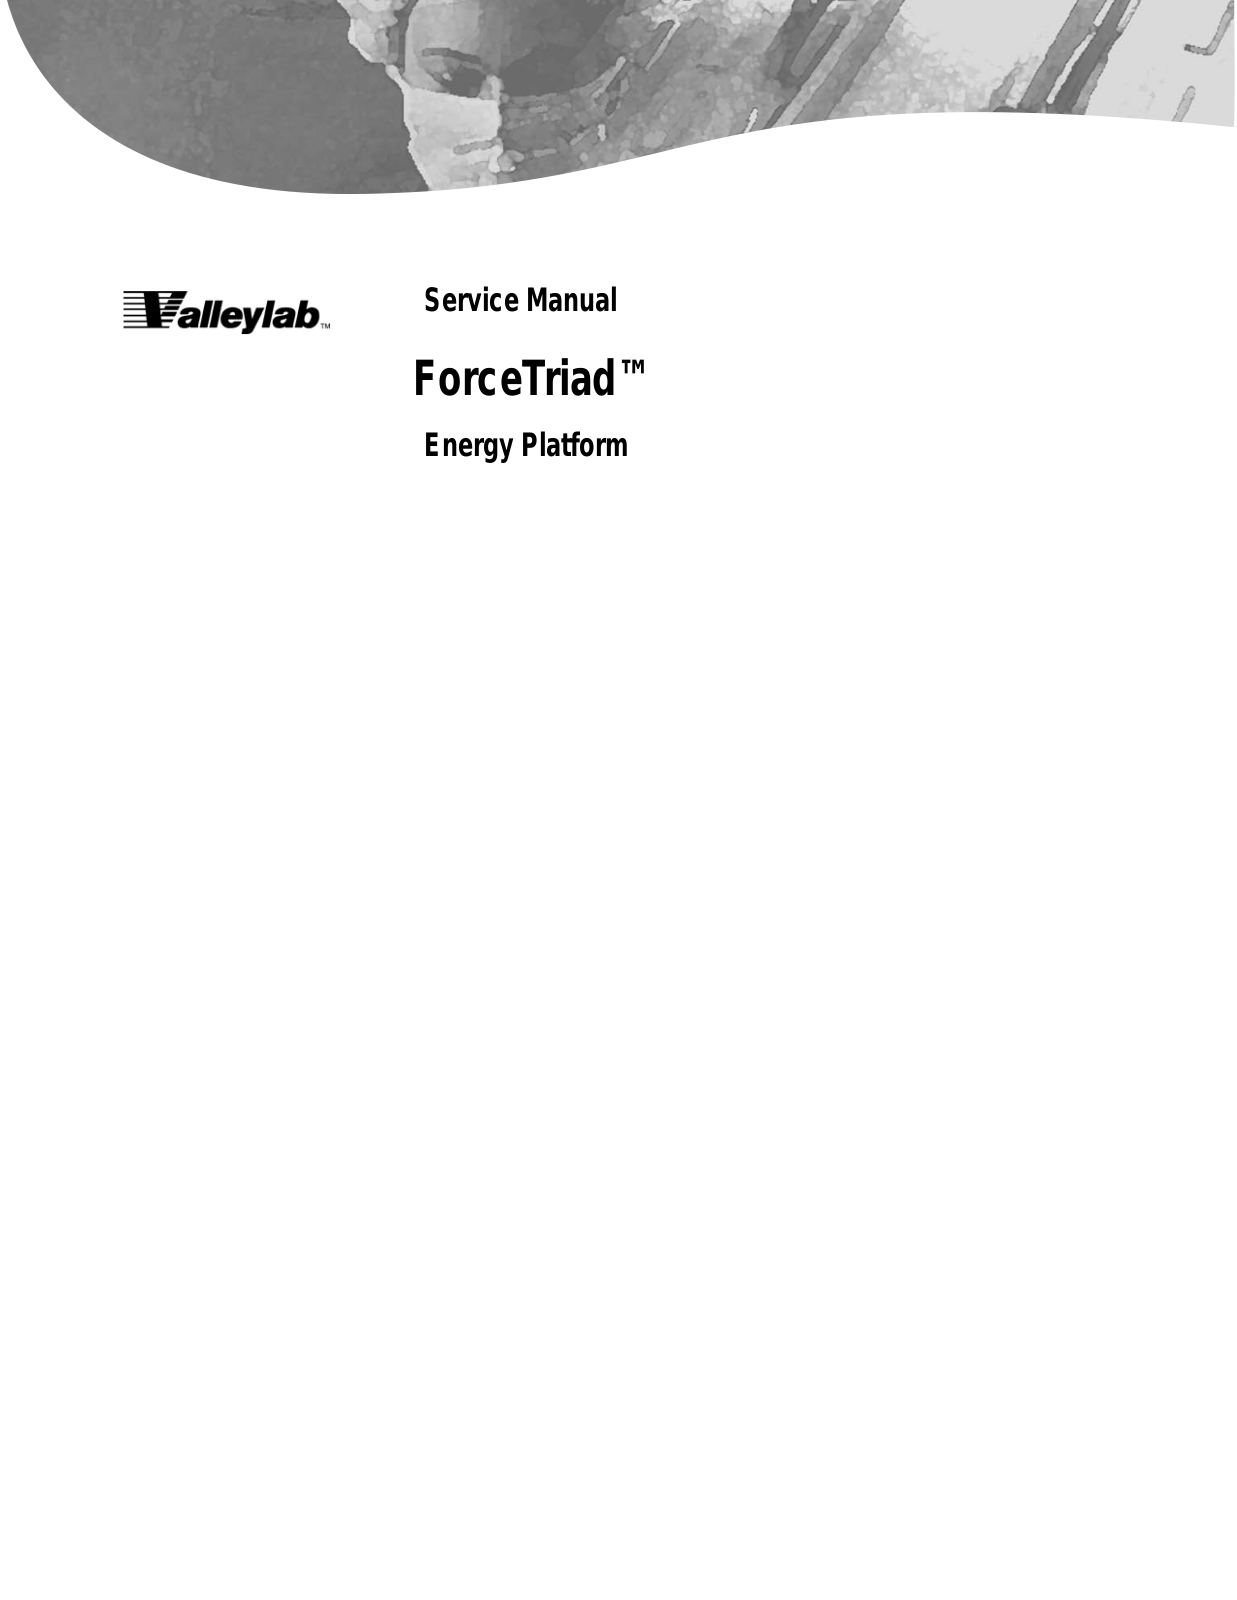 Valleylab ForceTriad Service manual